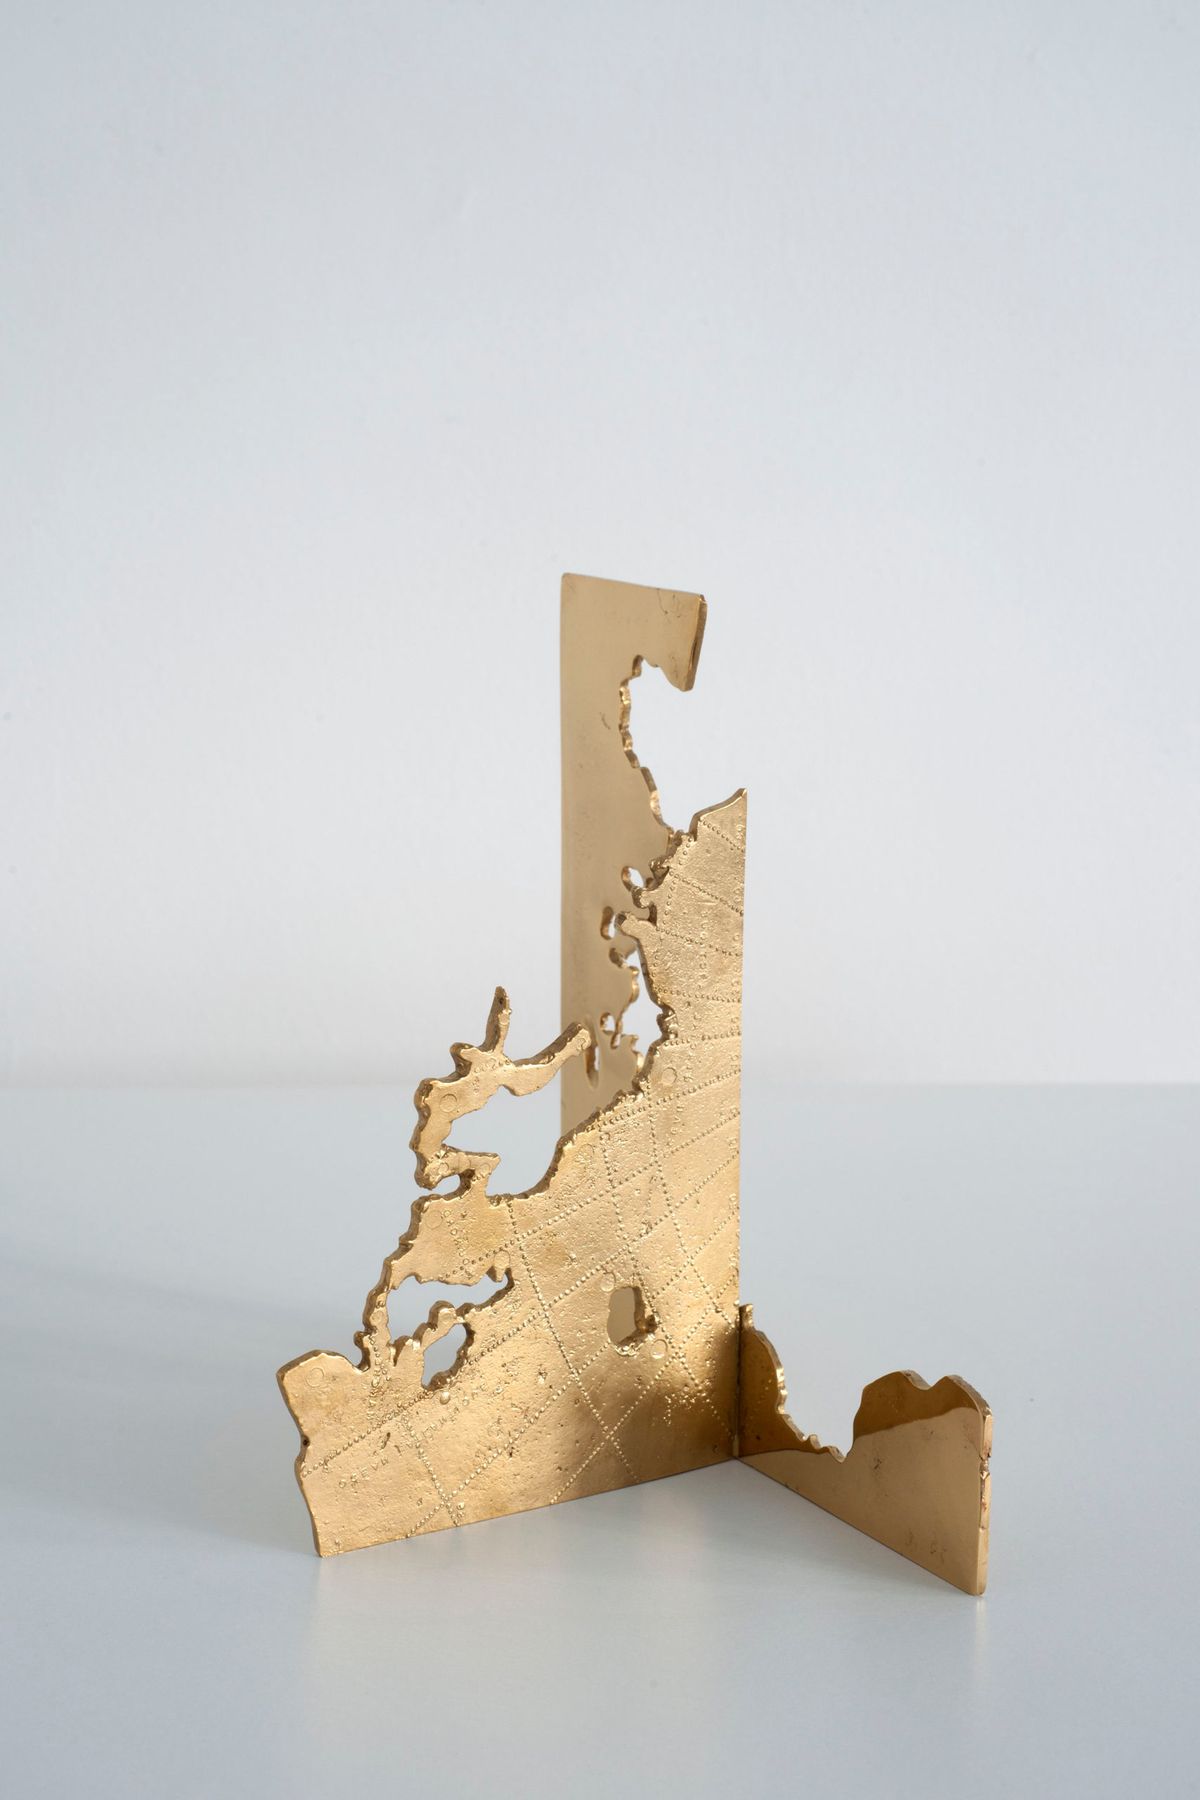 Nicolás Lamas, Moving Boundaries, 2020, bronze doré, 18,7 x 15,8 x 11,2 cm. © Galerie Meessen de Clercq, Bruxelles. Courtesy de l’artiste

